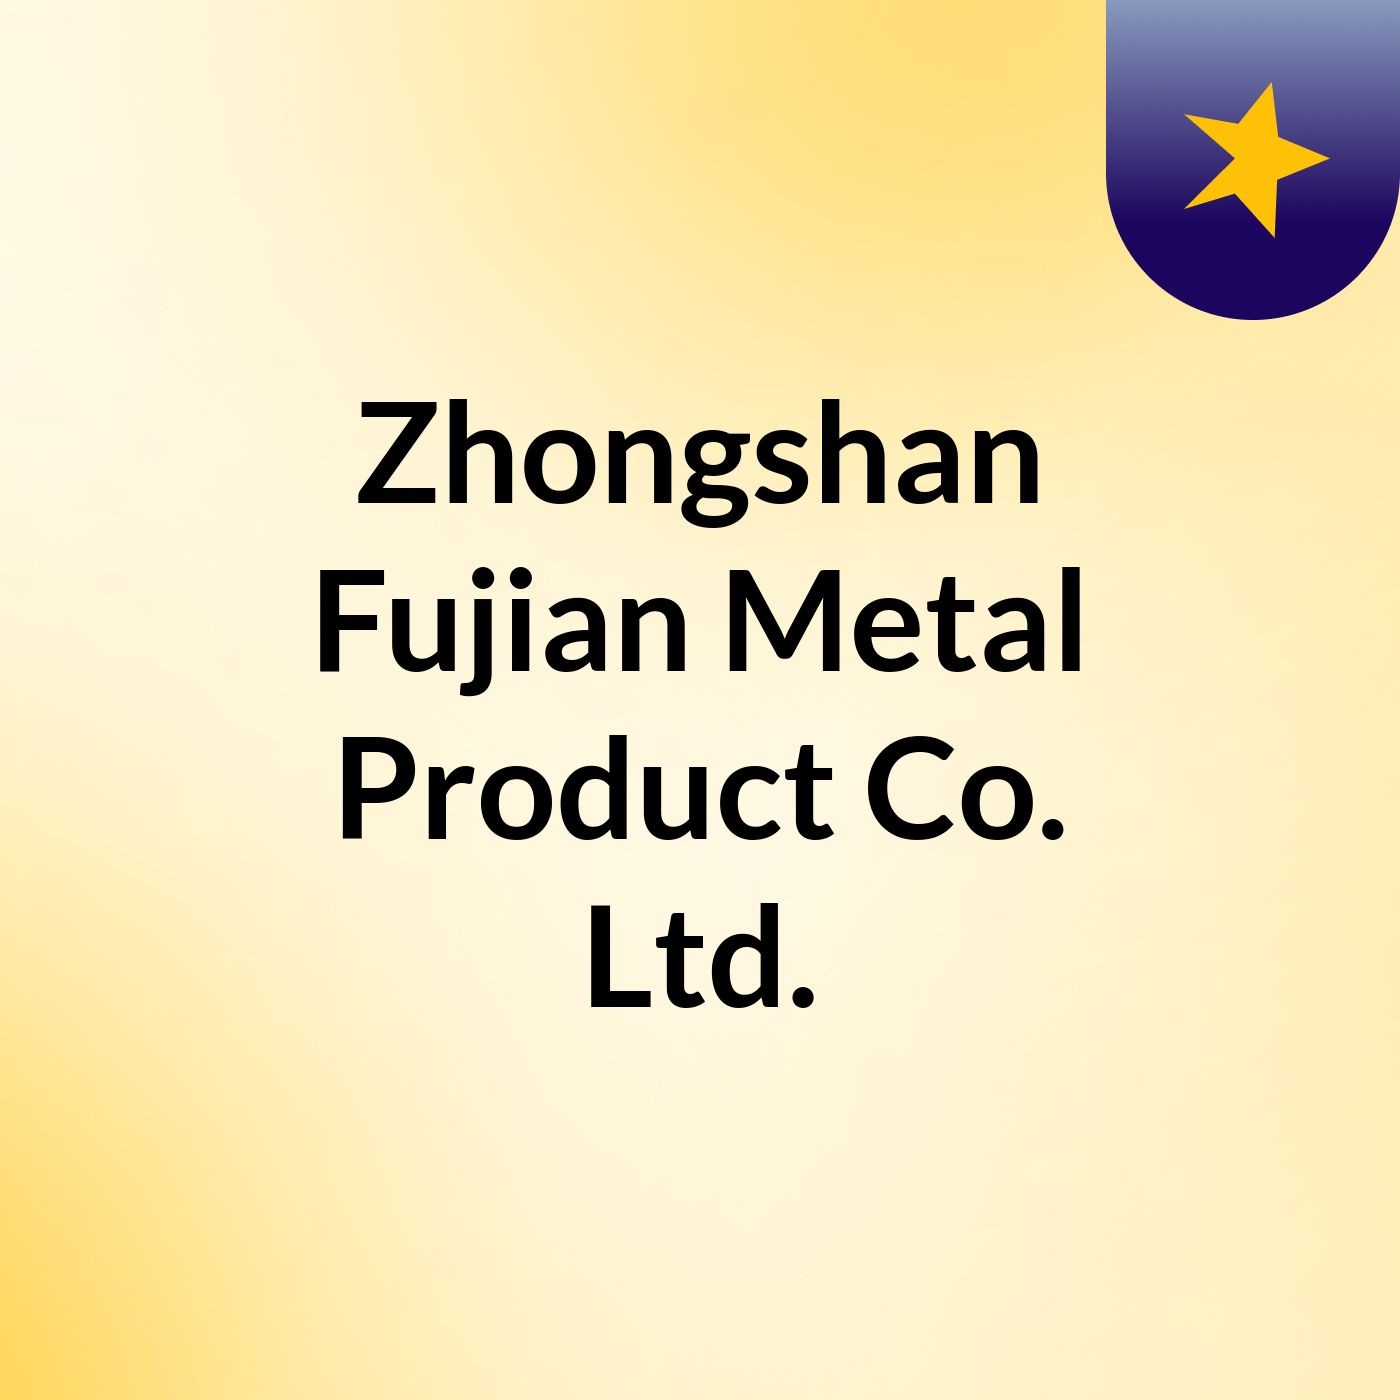 Zhongshan Fujian Metal Product Co., Ltd.